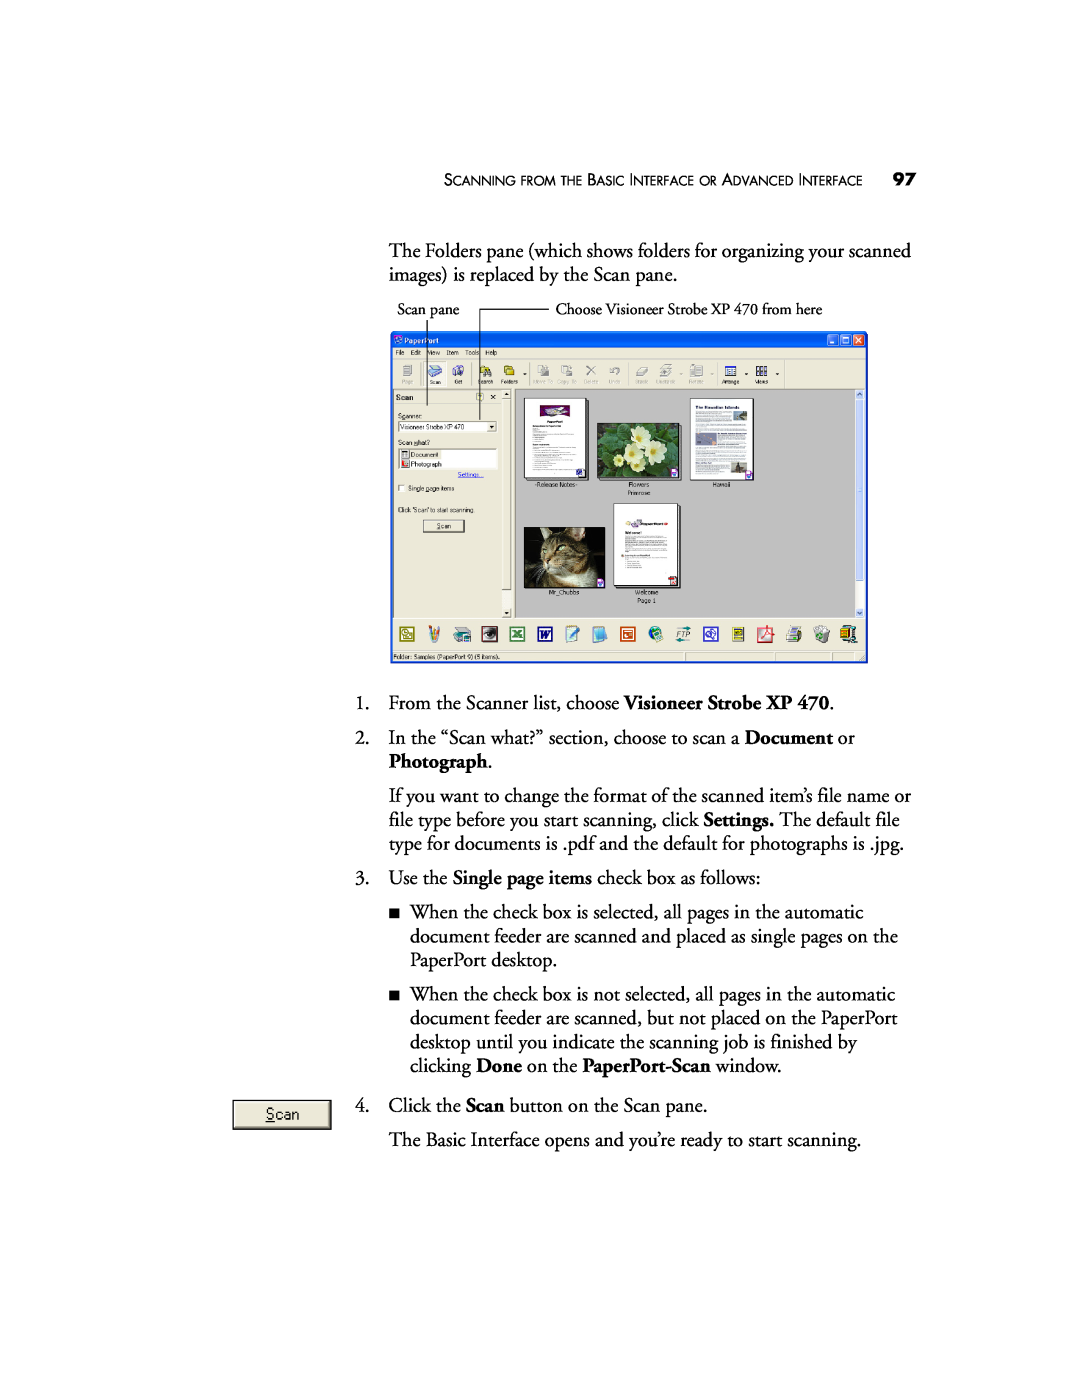 Visioneer XP 470 manual From the Scanner list, choose Visioneer Strobe XP 